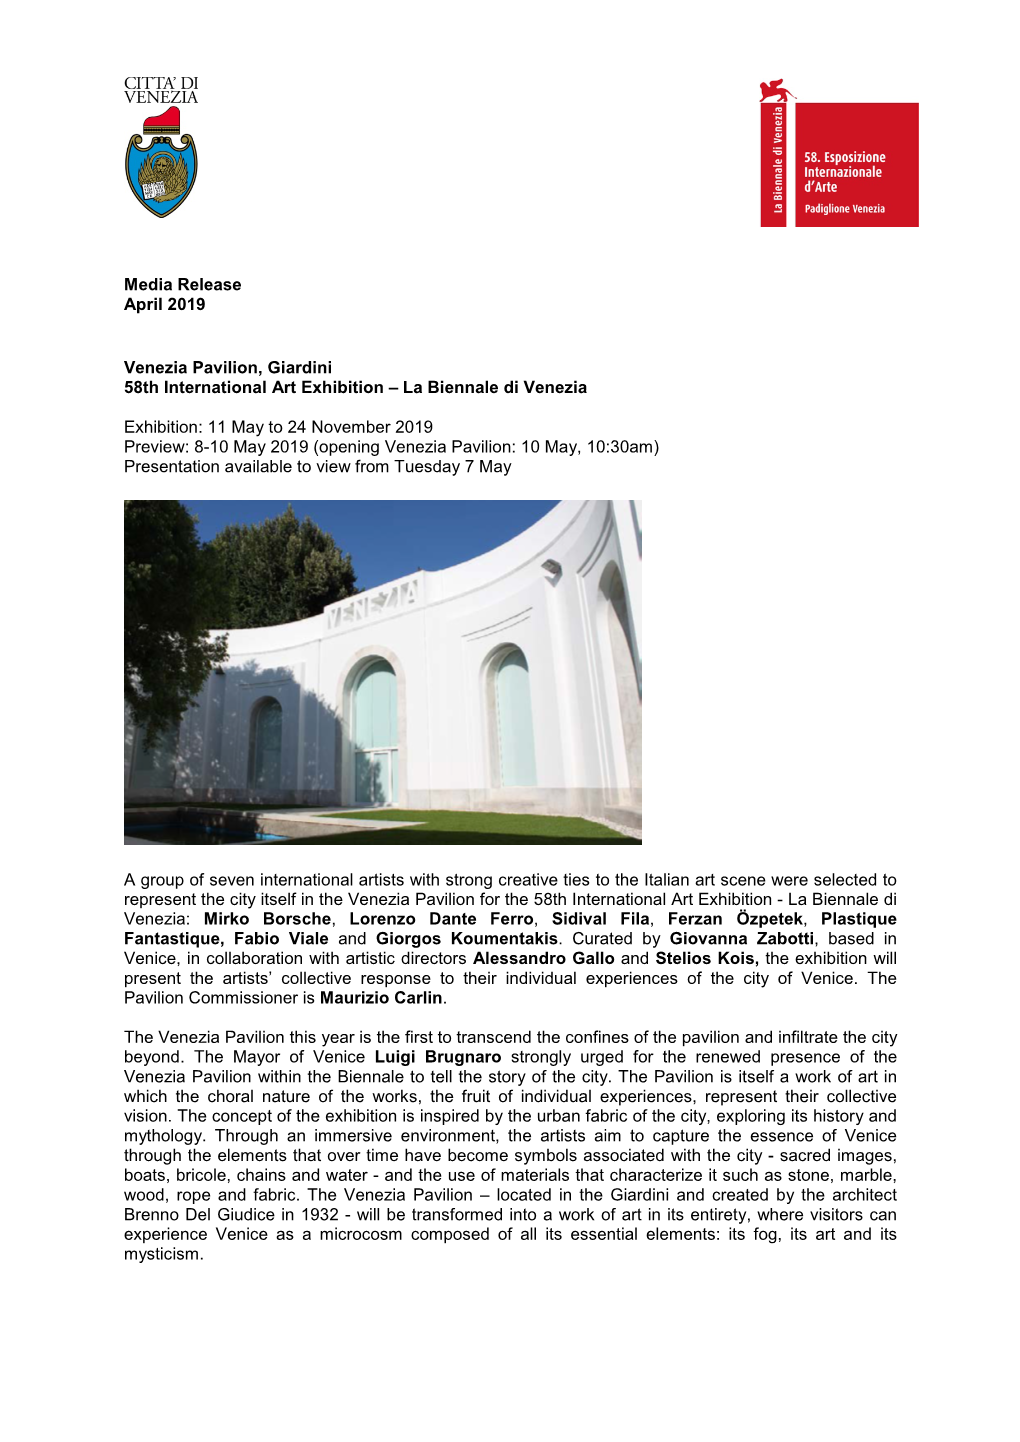 Media Release April 2019 Venezia Pavilion, Giardini 58Th